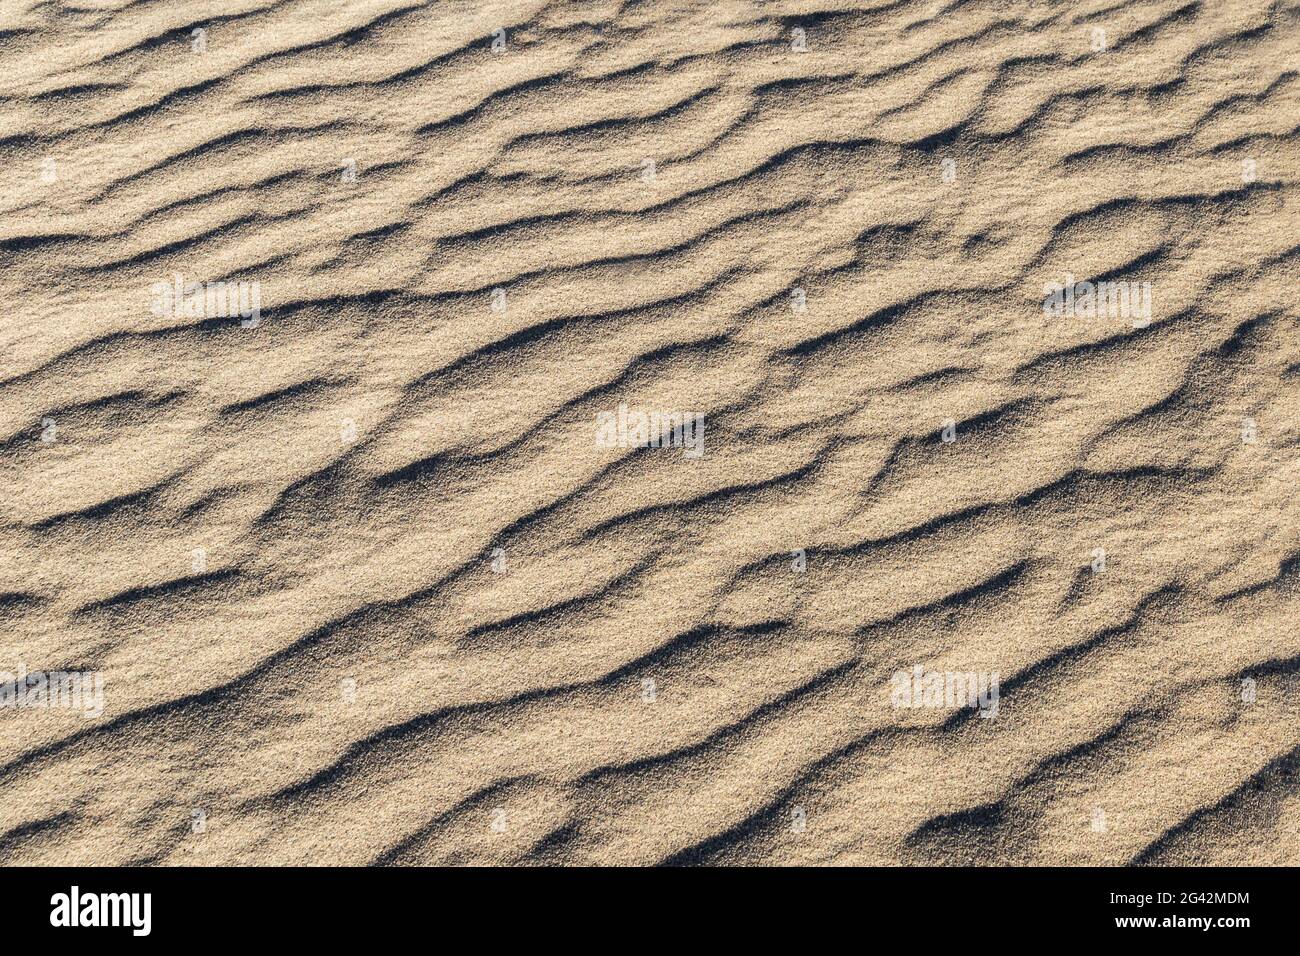 Modelli in sabbia creati dal vento, Mesquite Dunes, Death Valley, California. L'effetto complessivo è un pattern calmo e scorrevole. Foto Stock